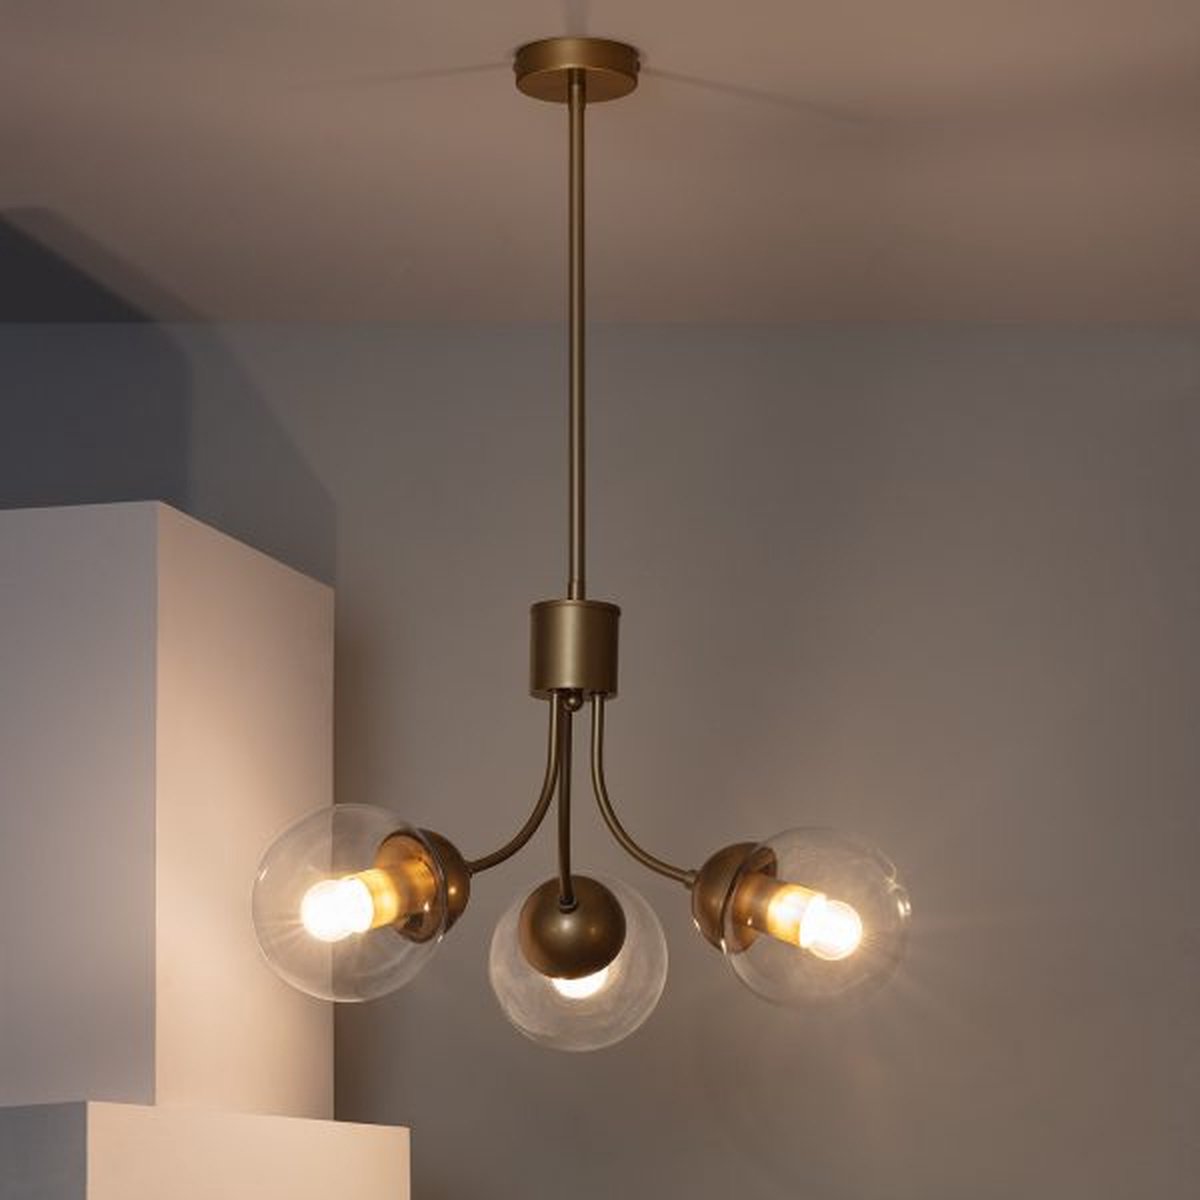 Bussandri - Vintage Hanglamp - Metaal - Vintage - E27 - L:50cm - Voor Binnen - Woonkamer - Eetkamer - Slaapkamer - Hanglamp - Goud